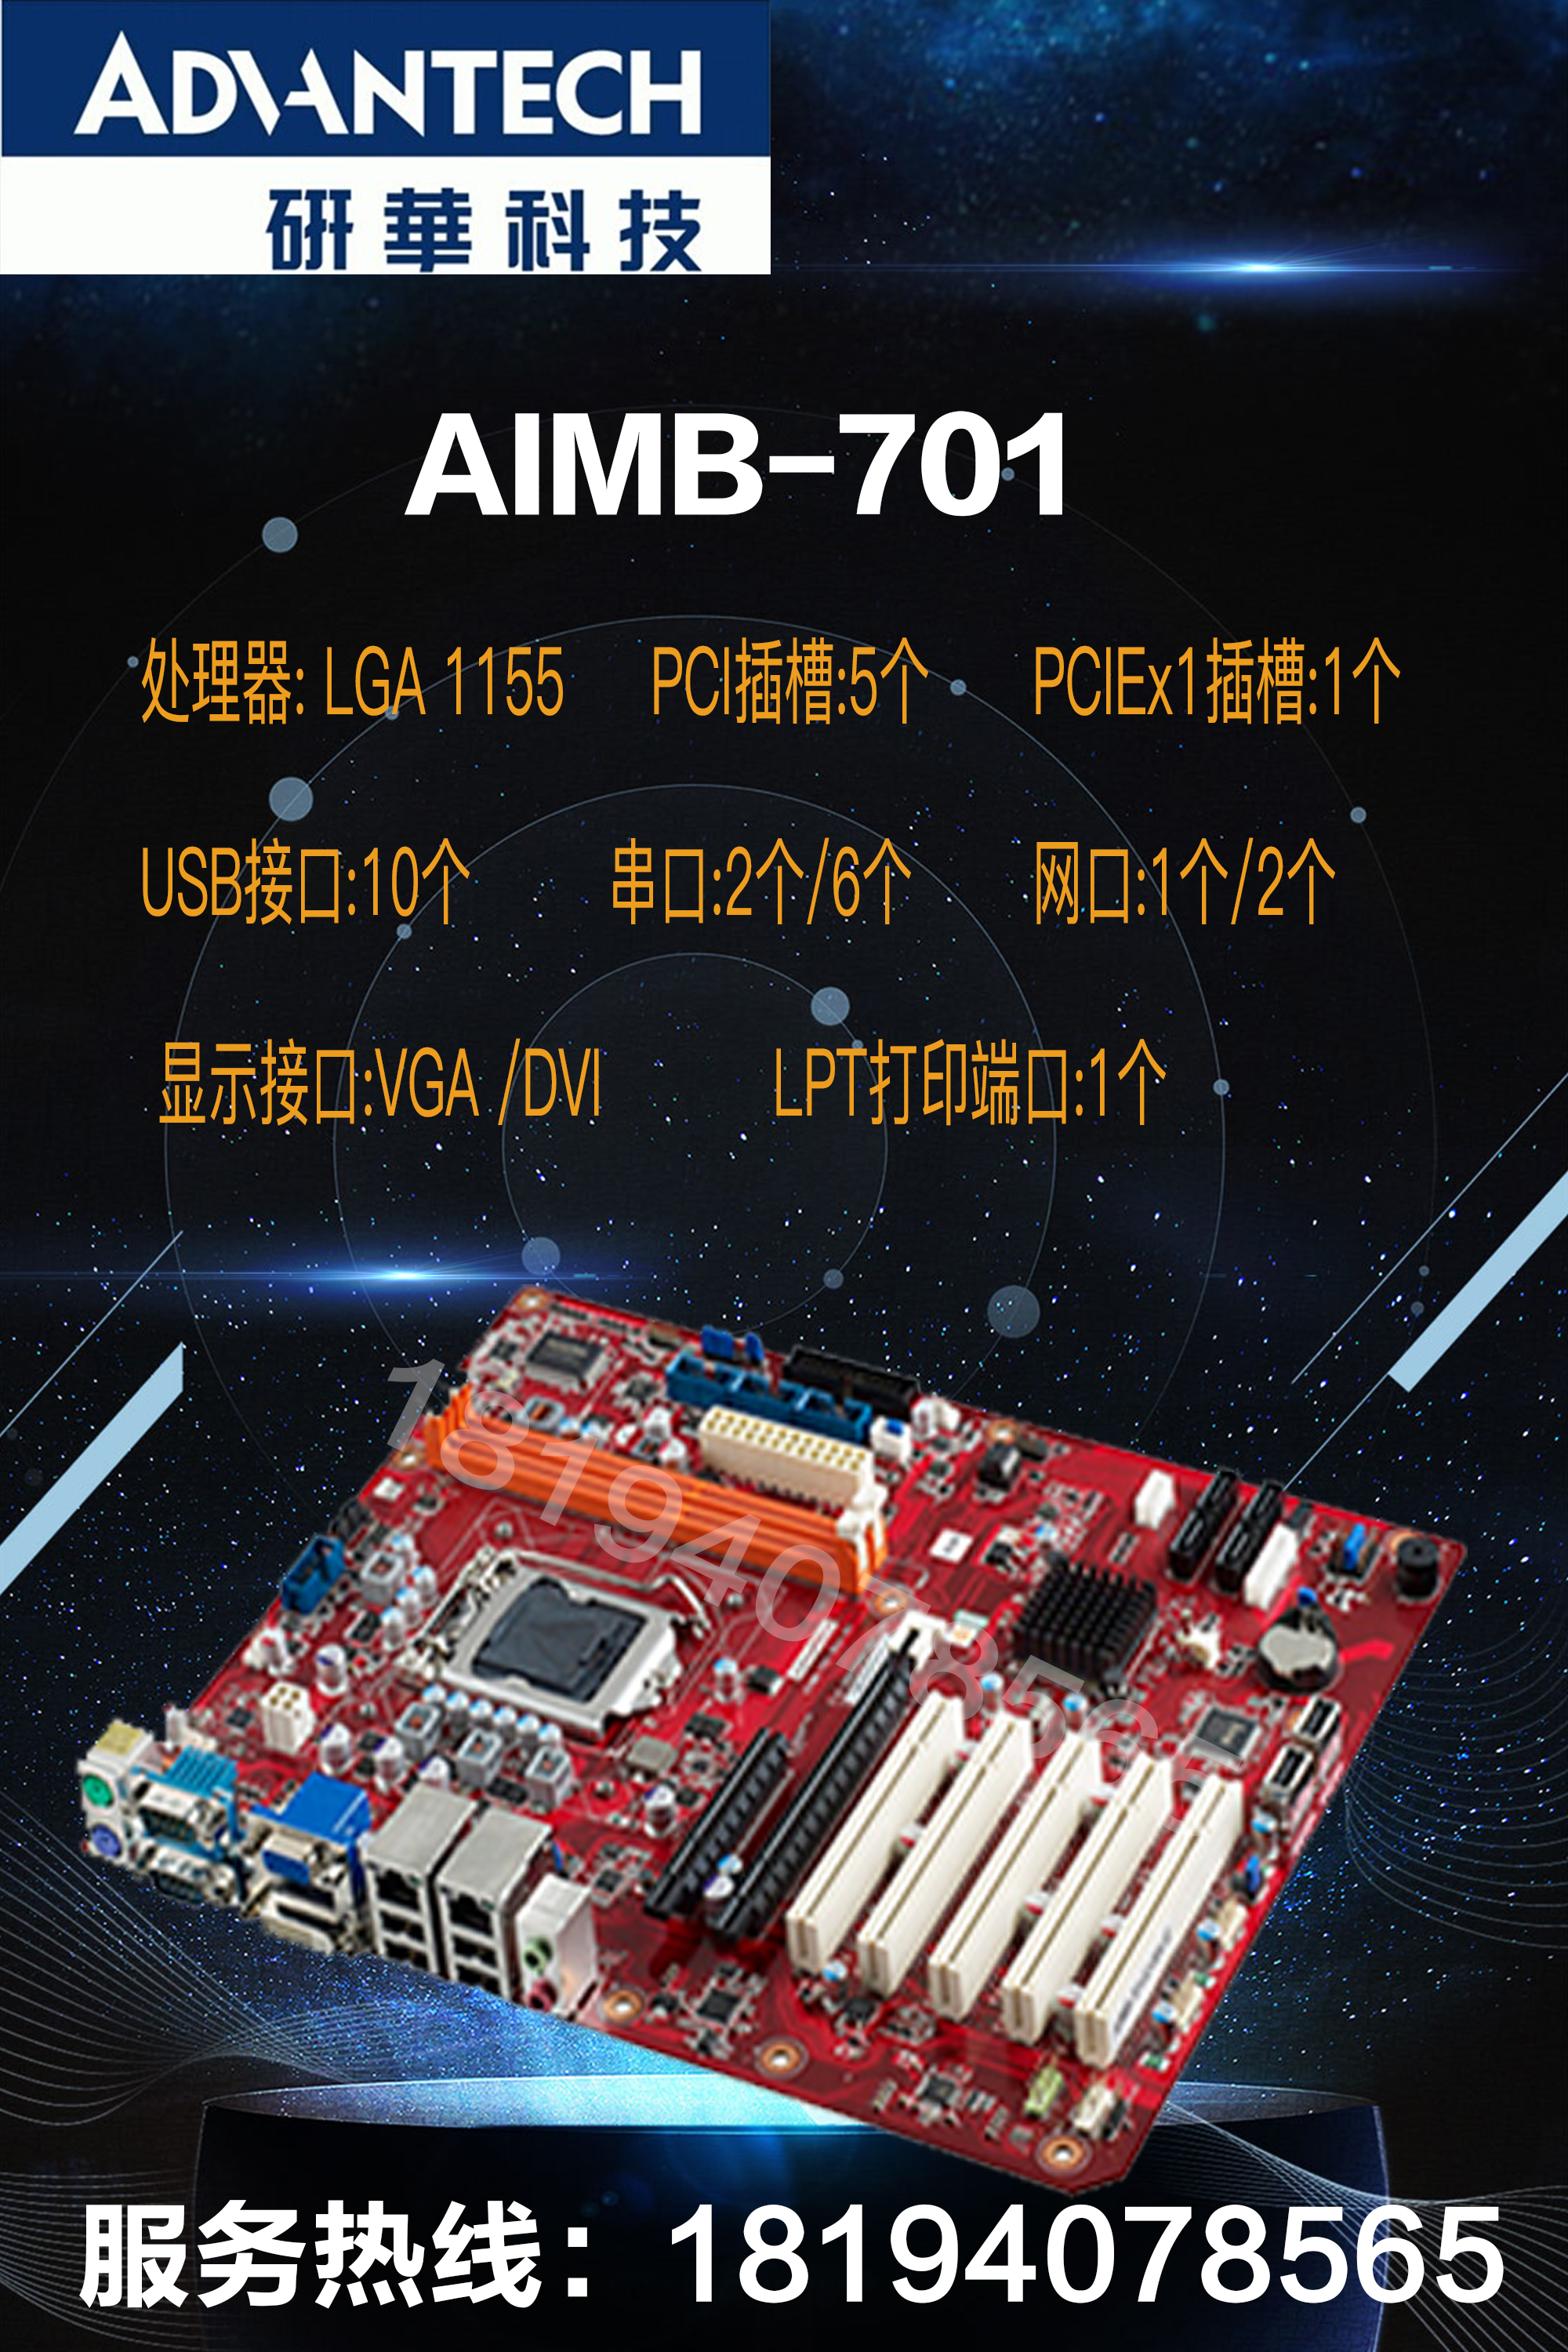 研华AIMB-701G2双网/LGA 1155 ATX母板，AIMB-701VG单网主板